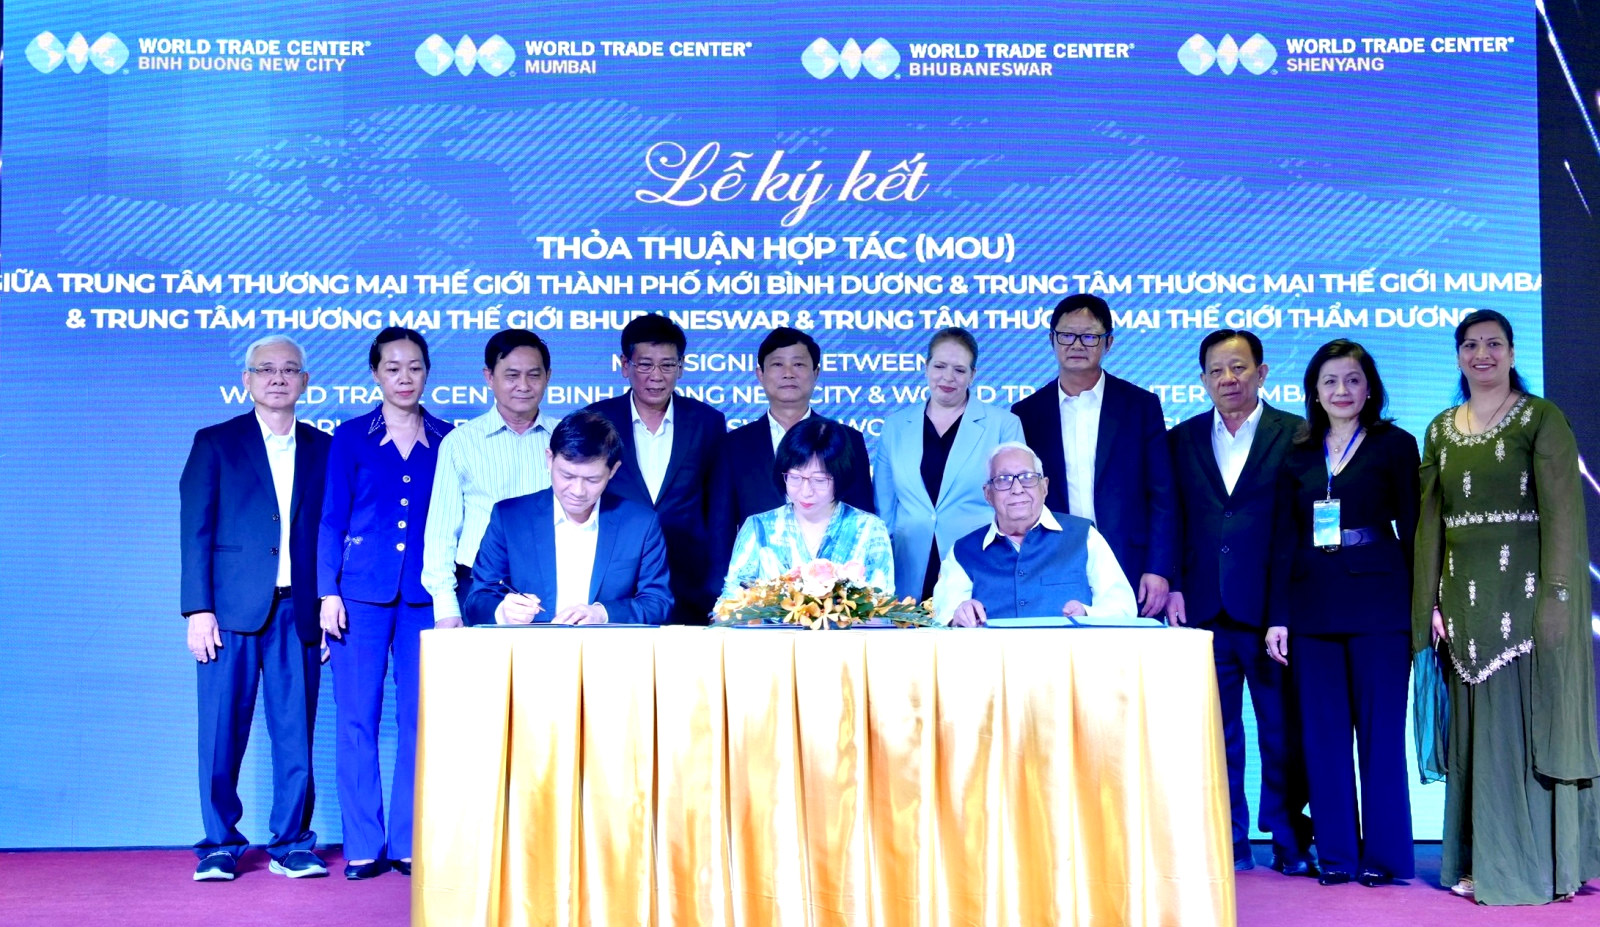 Lãnh đạo tỉnh Bình Dương với nghi thức công bố Trung tâm Đổi mới sáng tạo Việt Nam - Singapore ngày 29-8 tại Hà Nội.